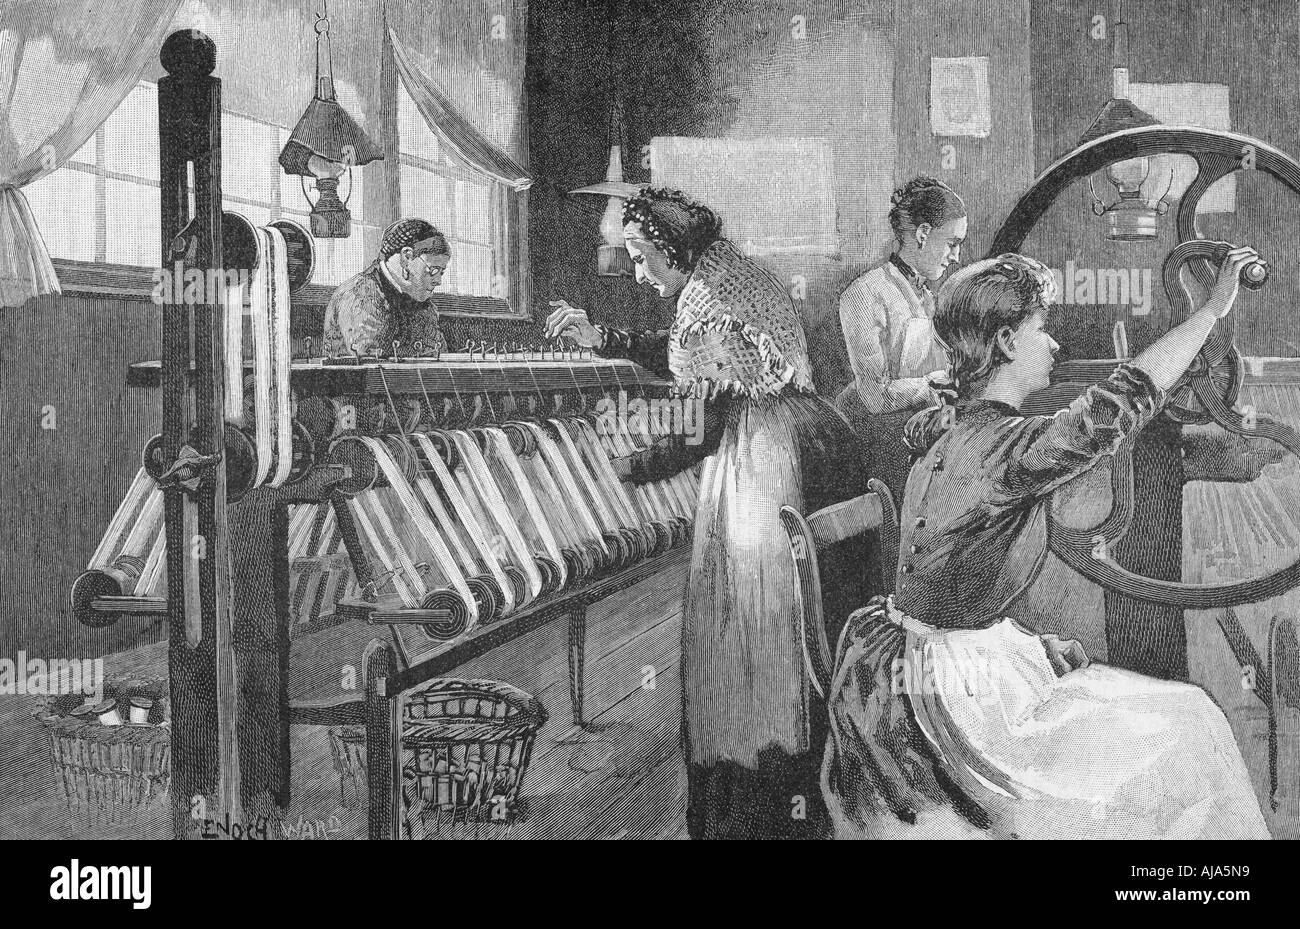 Spitalfields silk weavers, 1893. Artist: Enoch Ward Stock Photo